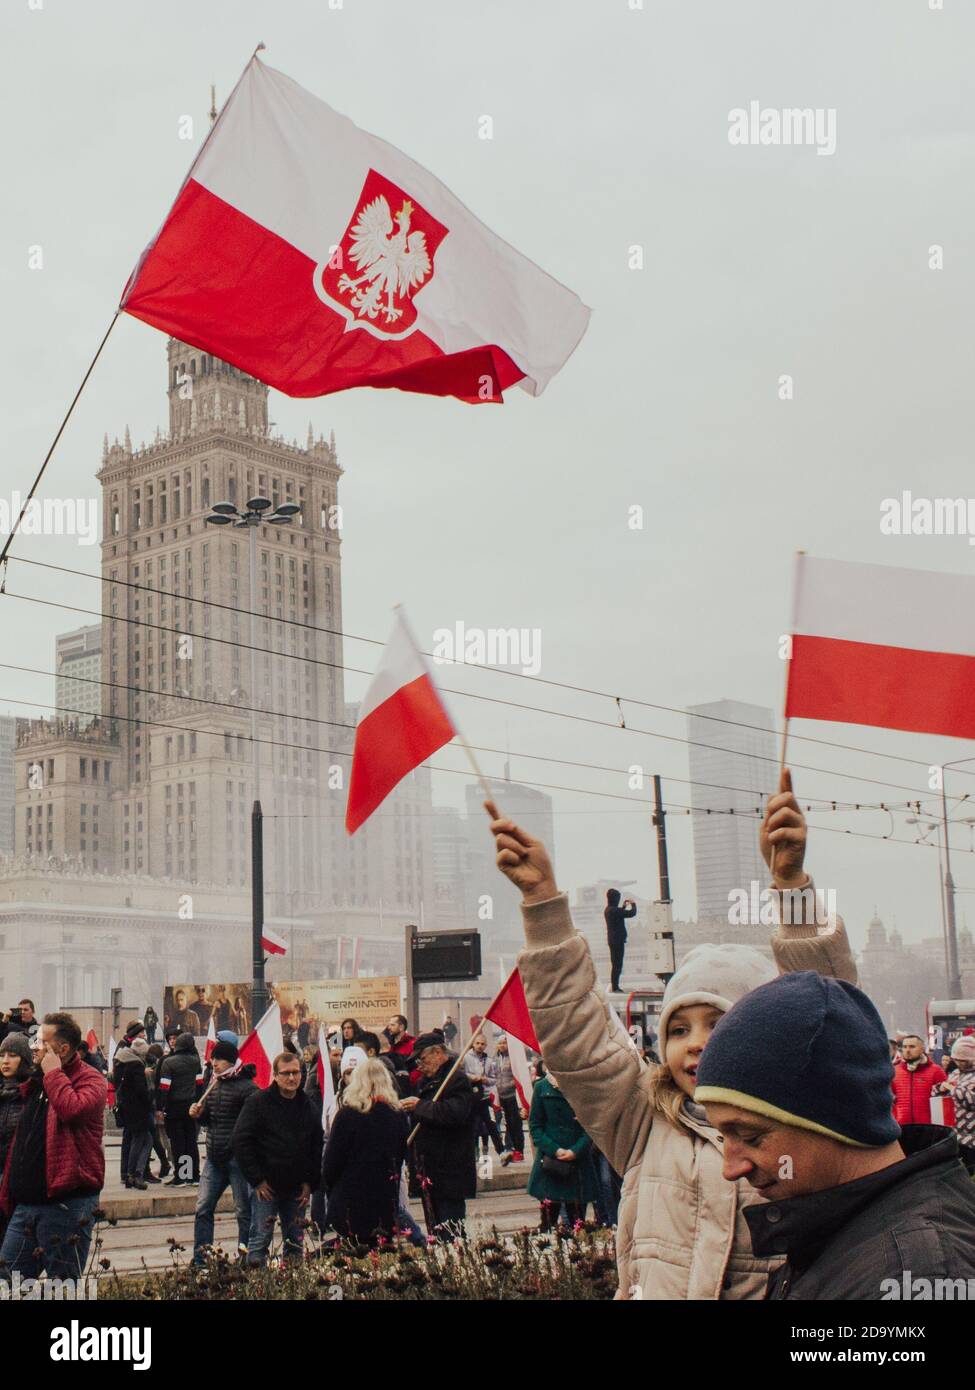 Varsovia, Polonia - 11 de noviembre de 2019: Día de la Independencia de Polonia, manifestación en Varsovia, gente marchando con banderas nacionales polacas Foto de stock